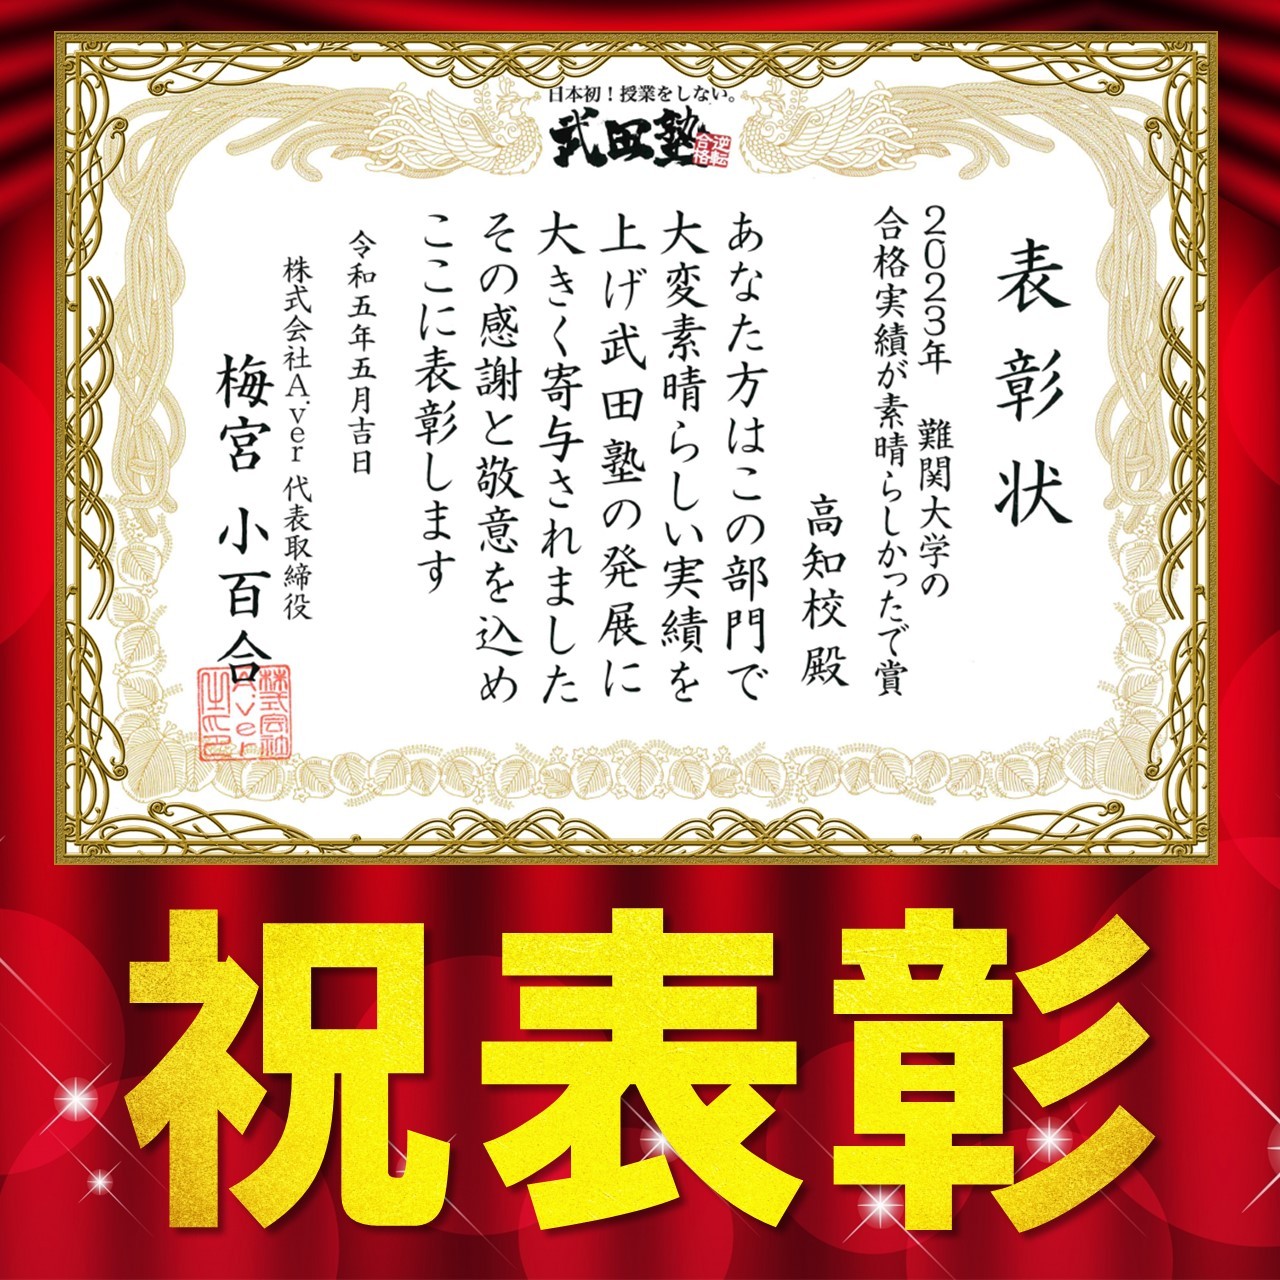 【報告】武田塾全体の合格実績で高知校が表彰されました！